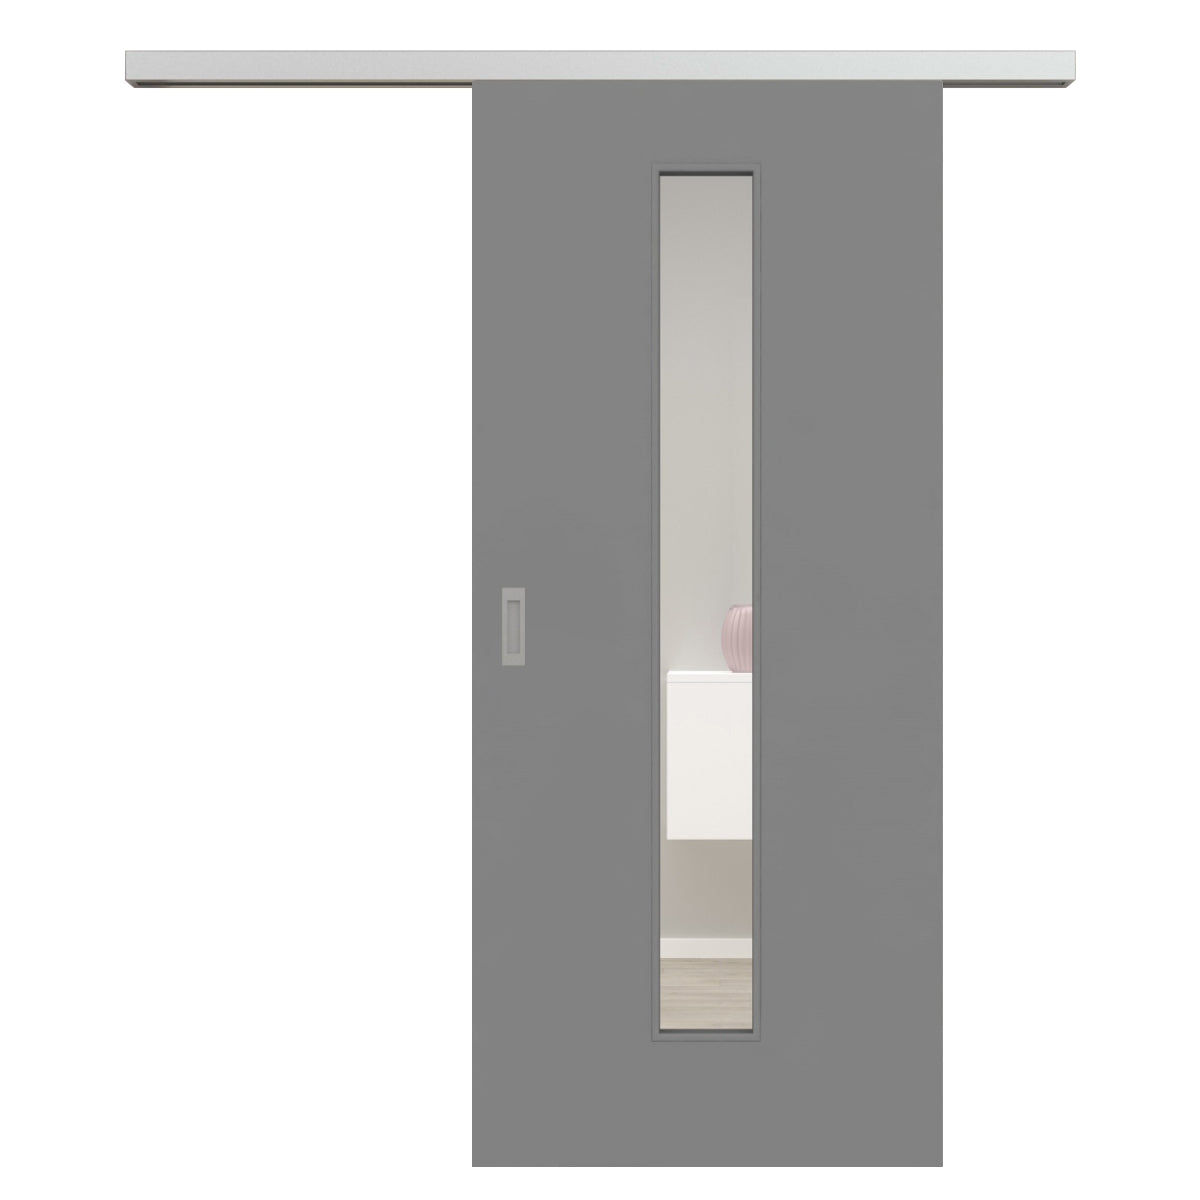 Schiebetür für Set mit Edelstahllaufkasten mit Lichtausschnitt grau glatt LAM